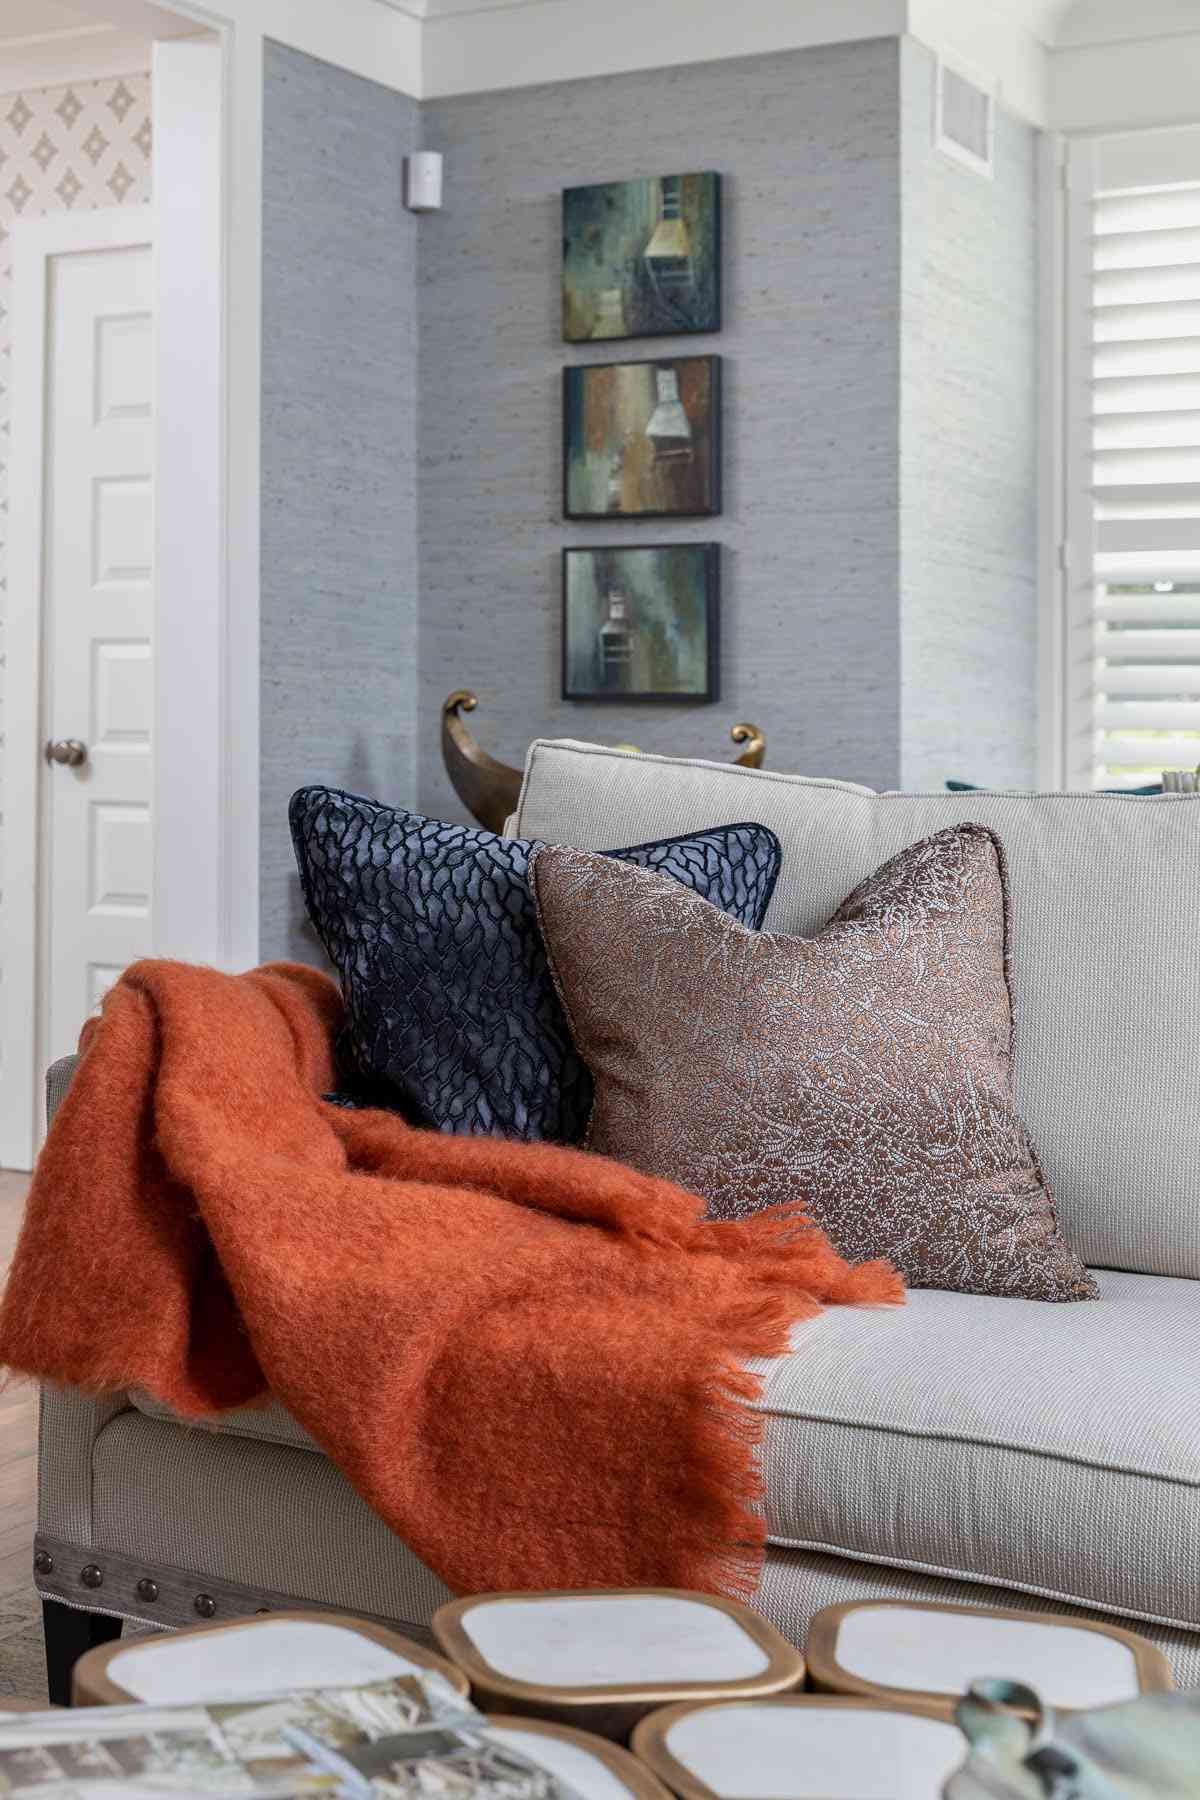 ein Wohnbereich mit Herbstdekoration und einer gemütlichen orangefarbenen Decke